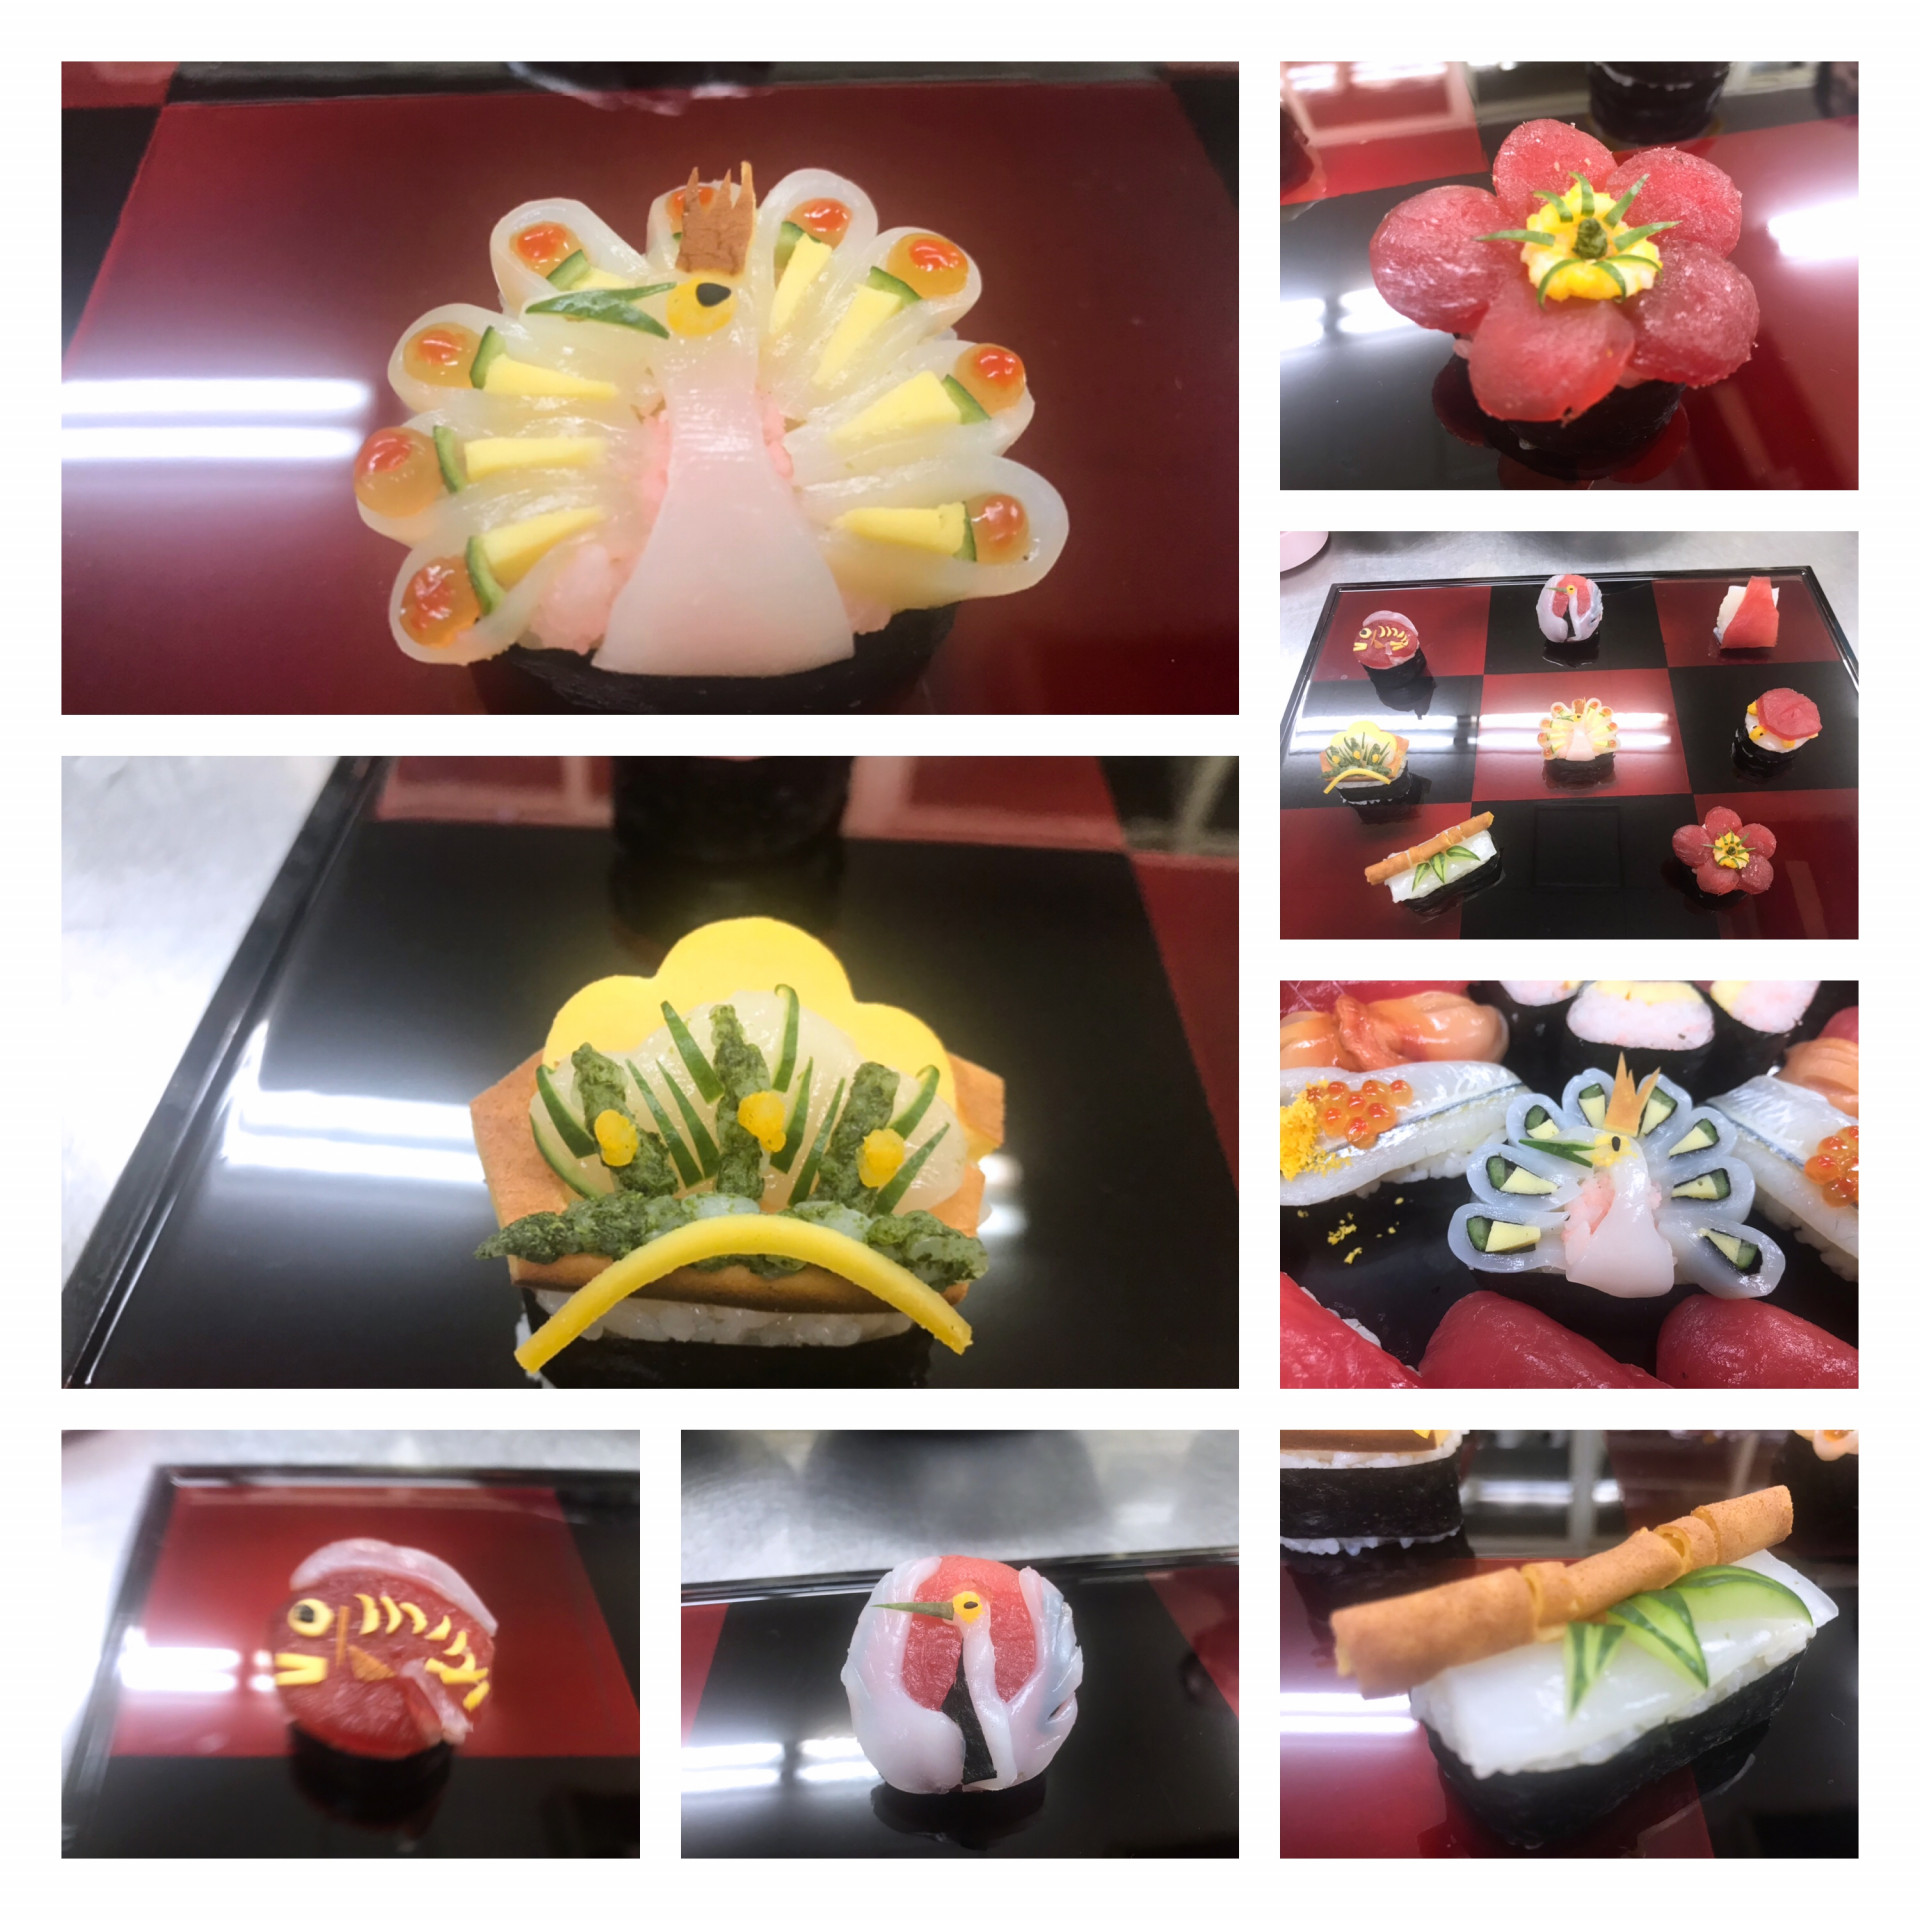 お寿司の講習会に参加して可愛い握りや芸術的な作品を拝見しました。